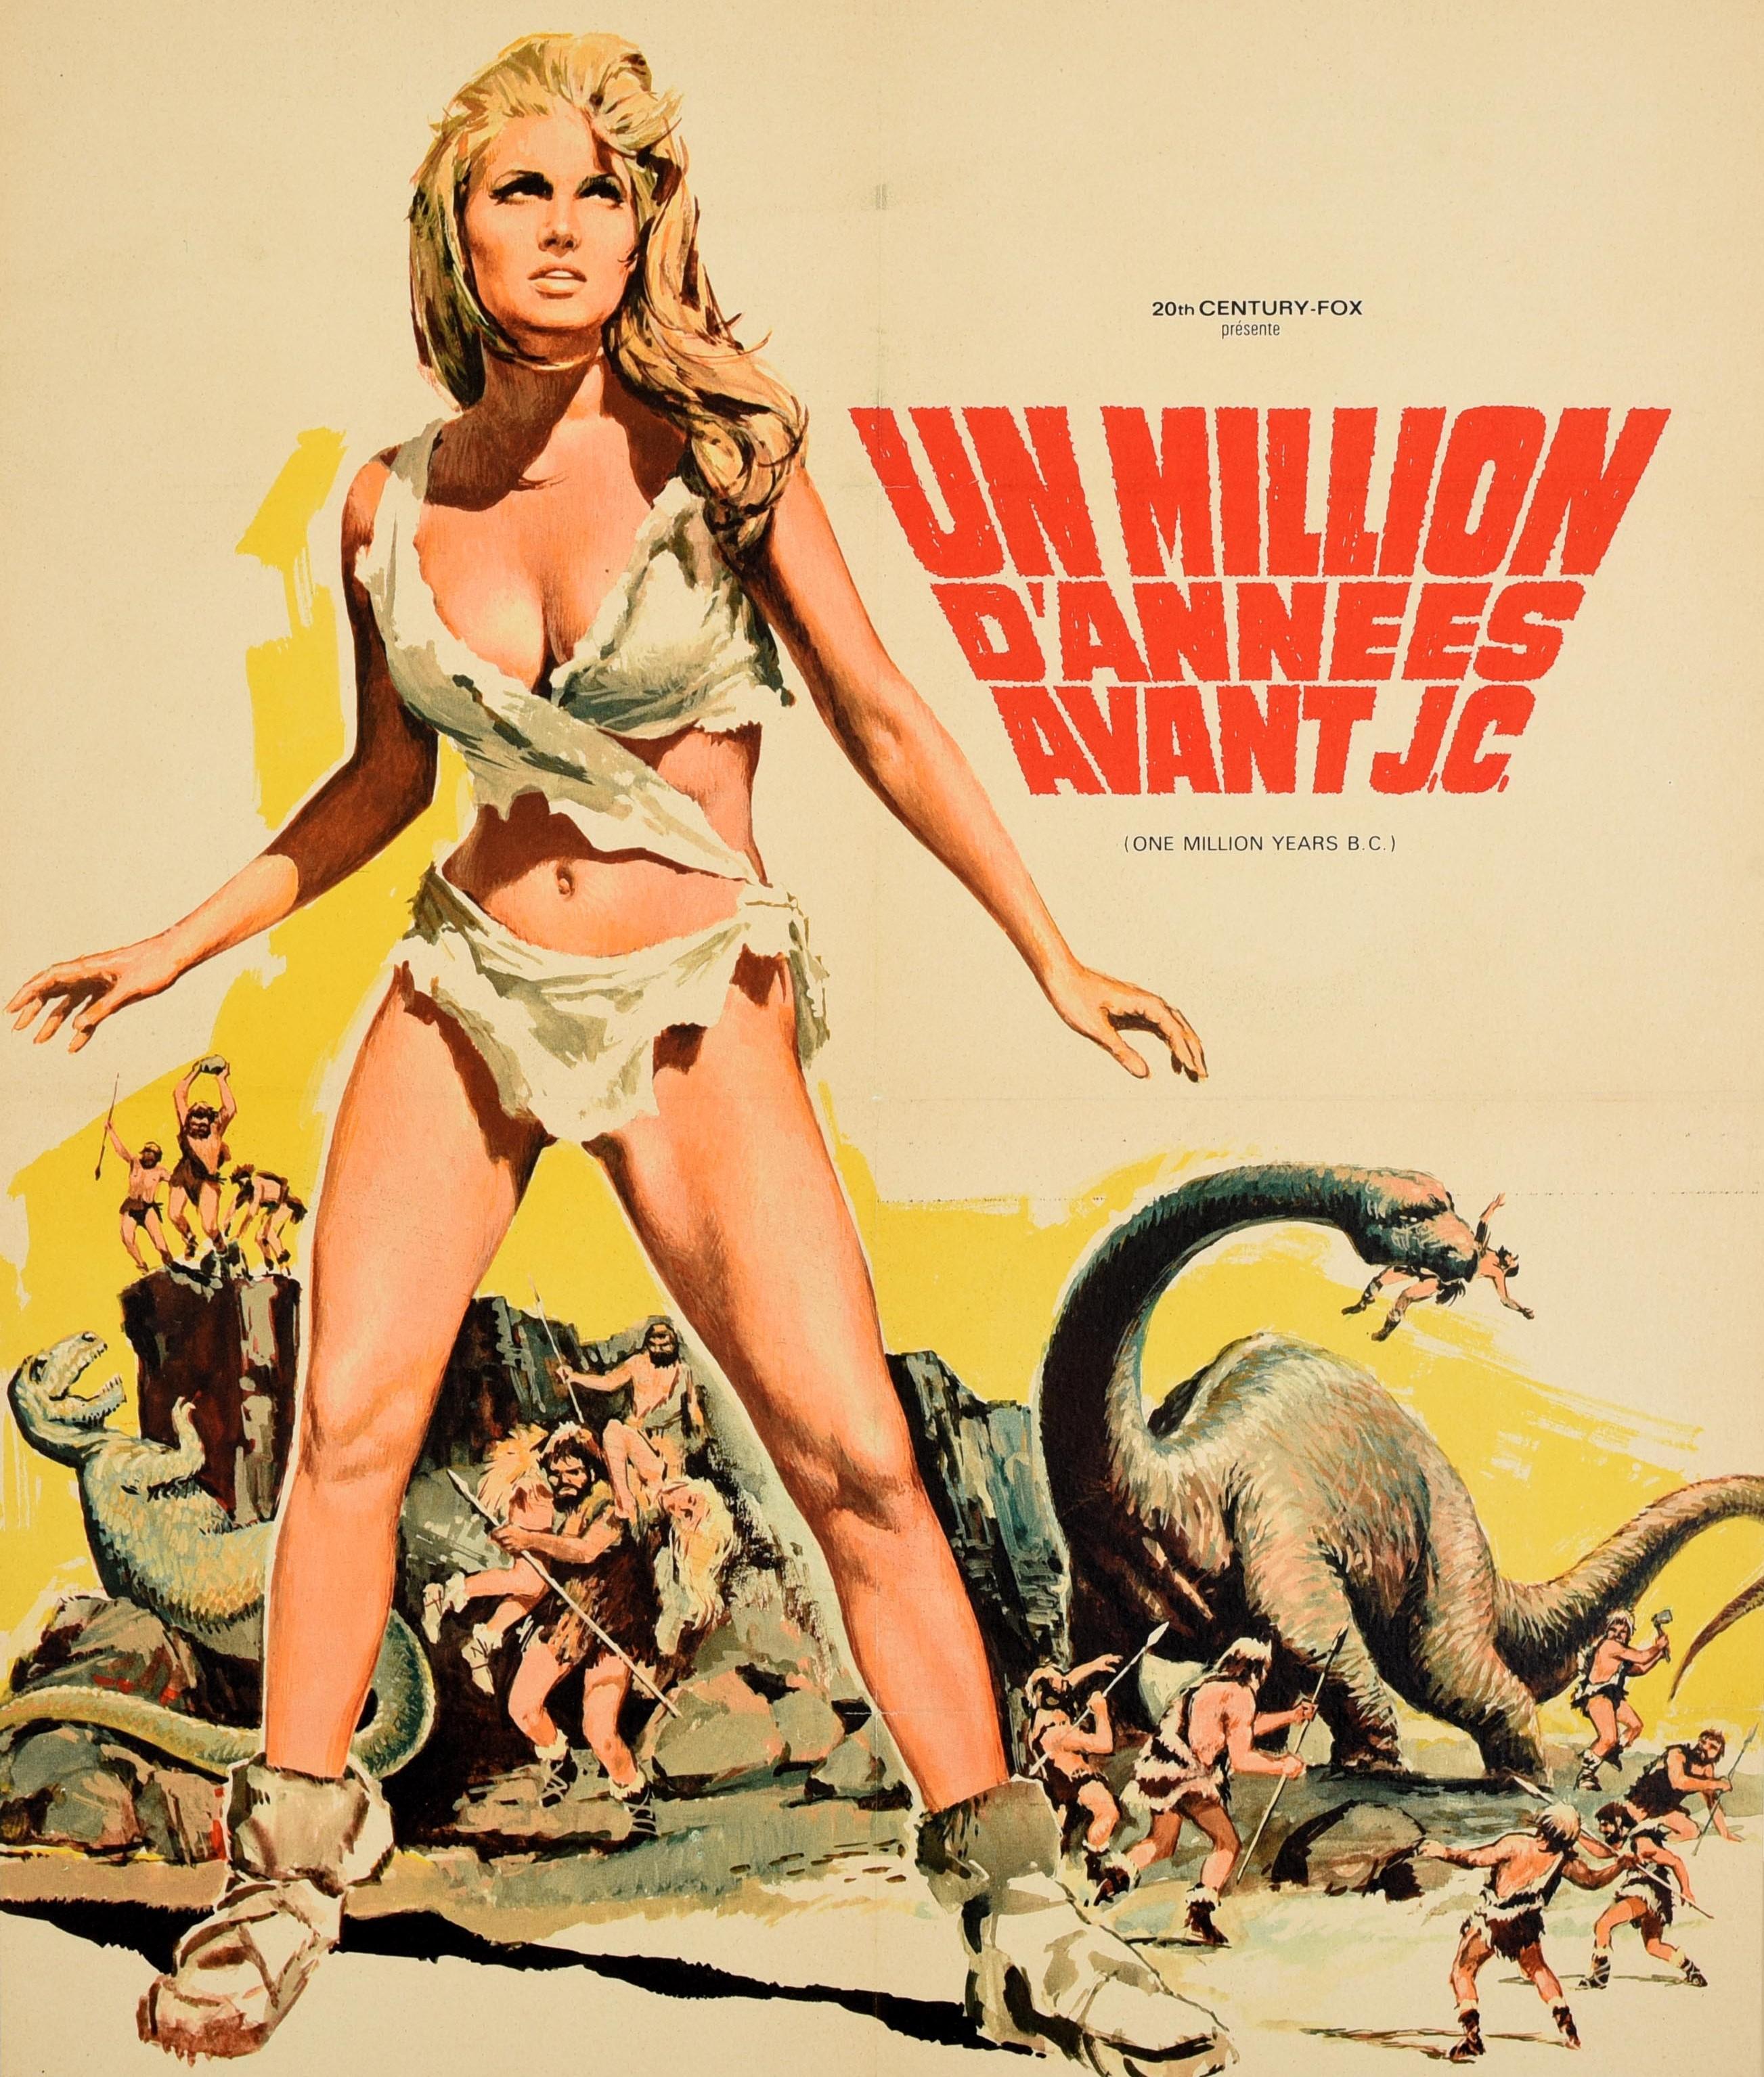 Originales Vintage-Filmplakat für den französischen Kinostart des Fantasy-Abenteuerfilms One Million Years B.C. / Un Million D'Annees Avant J.C., der in einer prähistorischen Welt mit Höhlenmenschen und Dinosauriern spielt, unter der Regie von Don